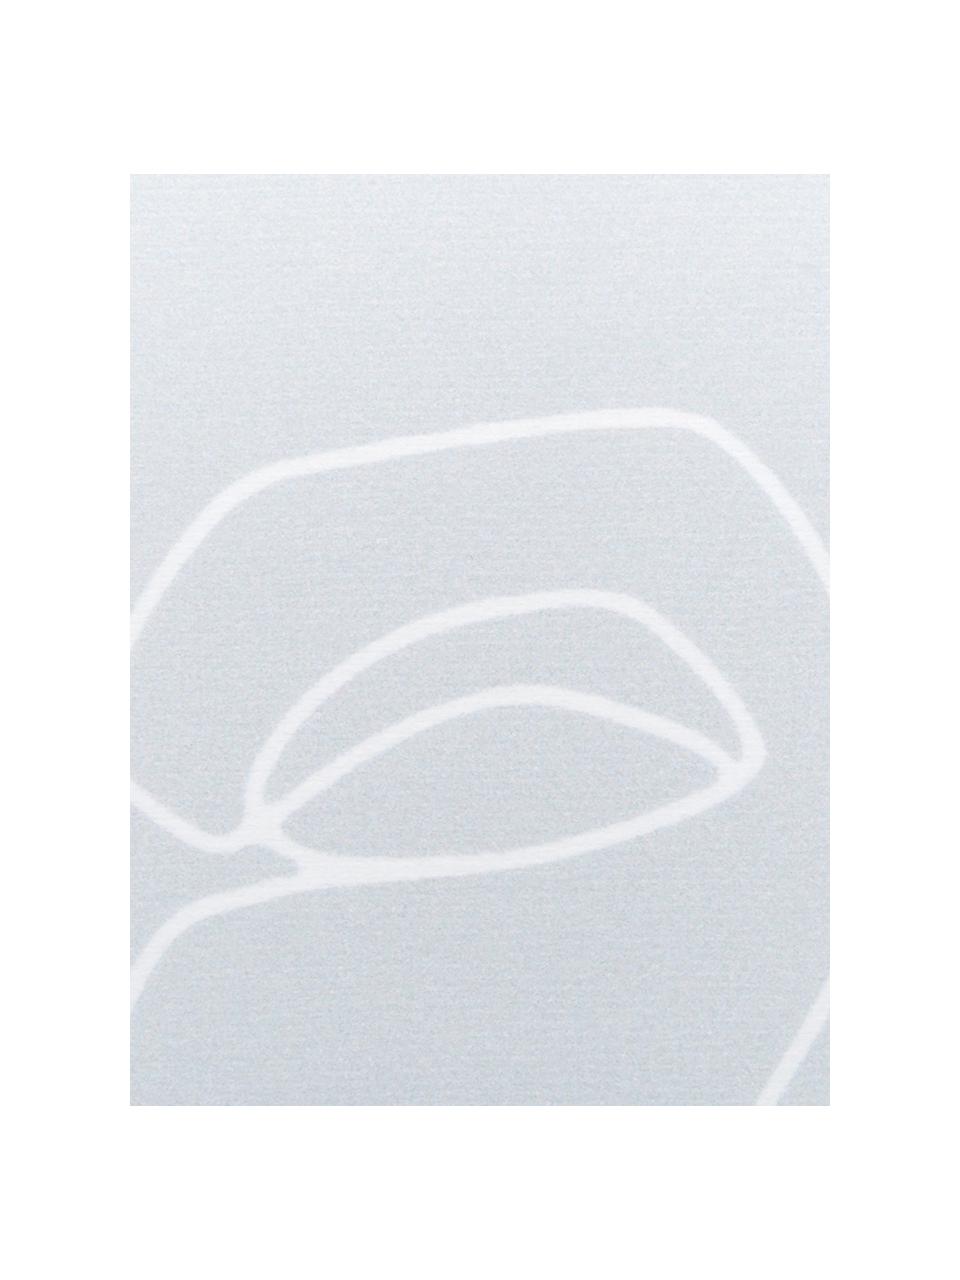 Leichtes Strandtuch Faces mit abstrakter One Line Zeichnung, 55% Polyester, 45% Baumwolle Sehr leichte Qualität, 340 g/m², Grau, Weiss, B 70 x L 150 cm